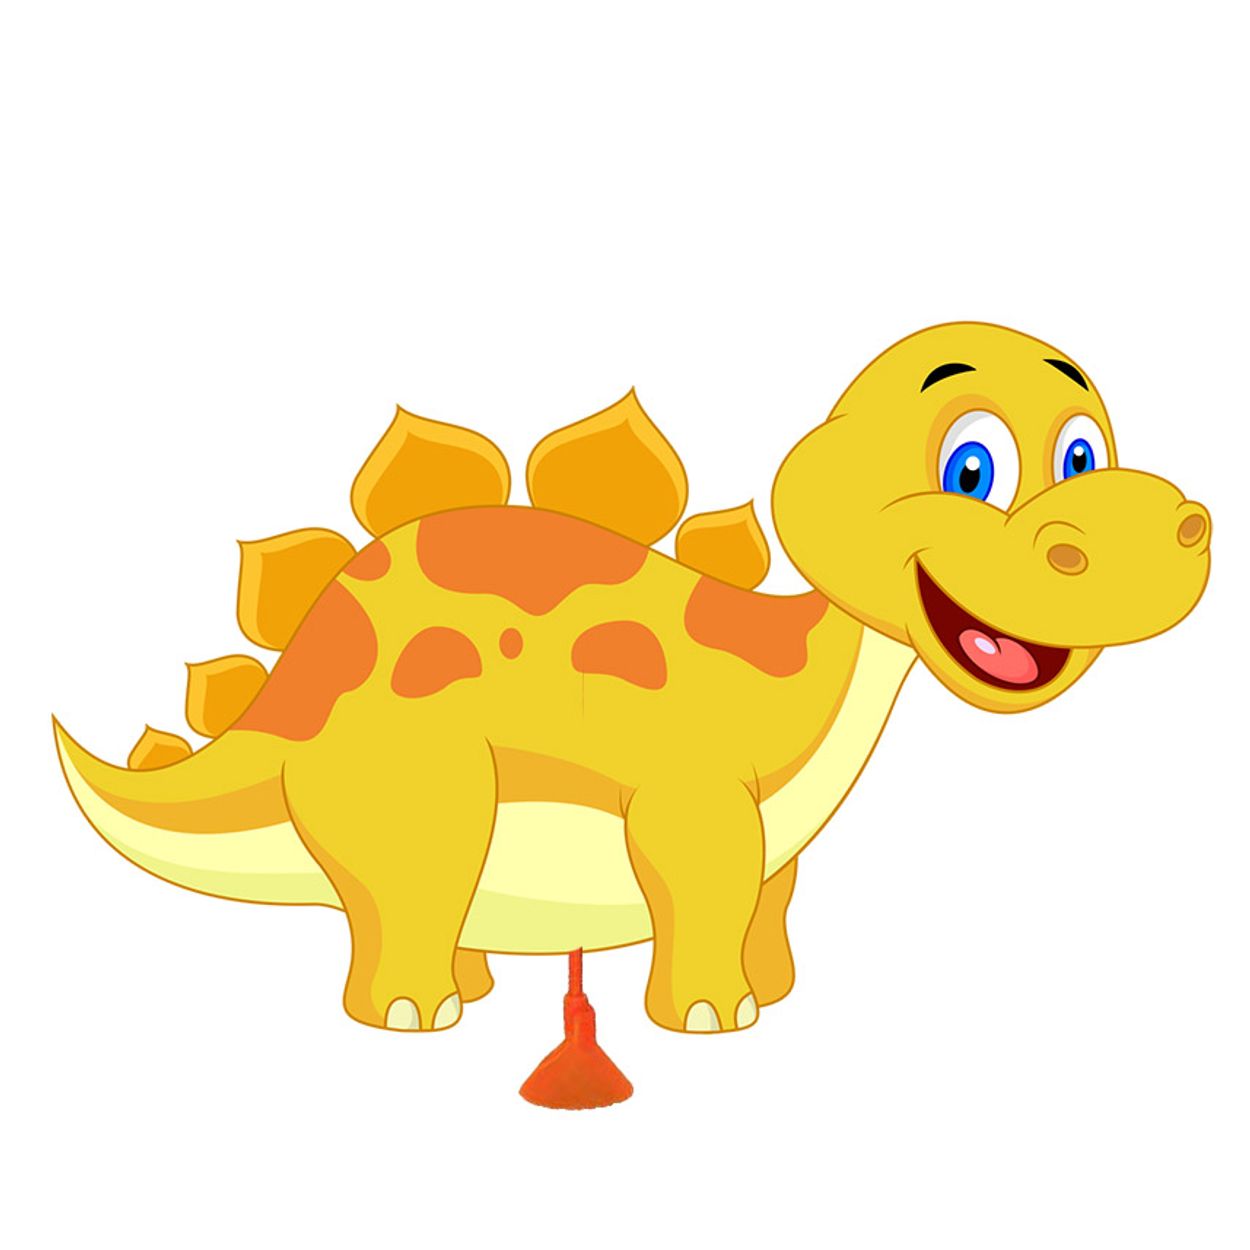 6 numeros Dinossauro Baby especial - Fazendo a Nossa Festa